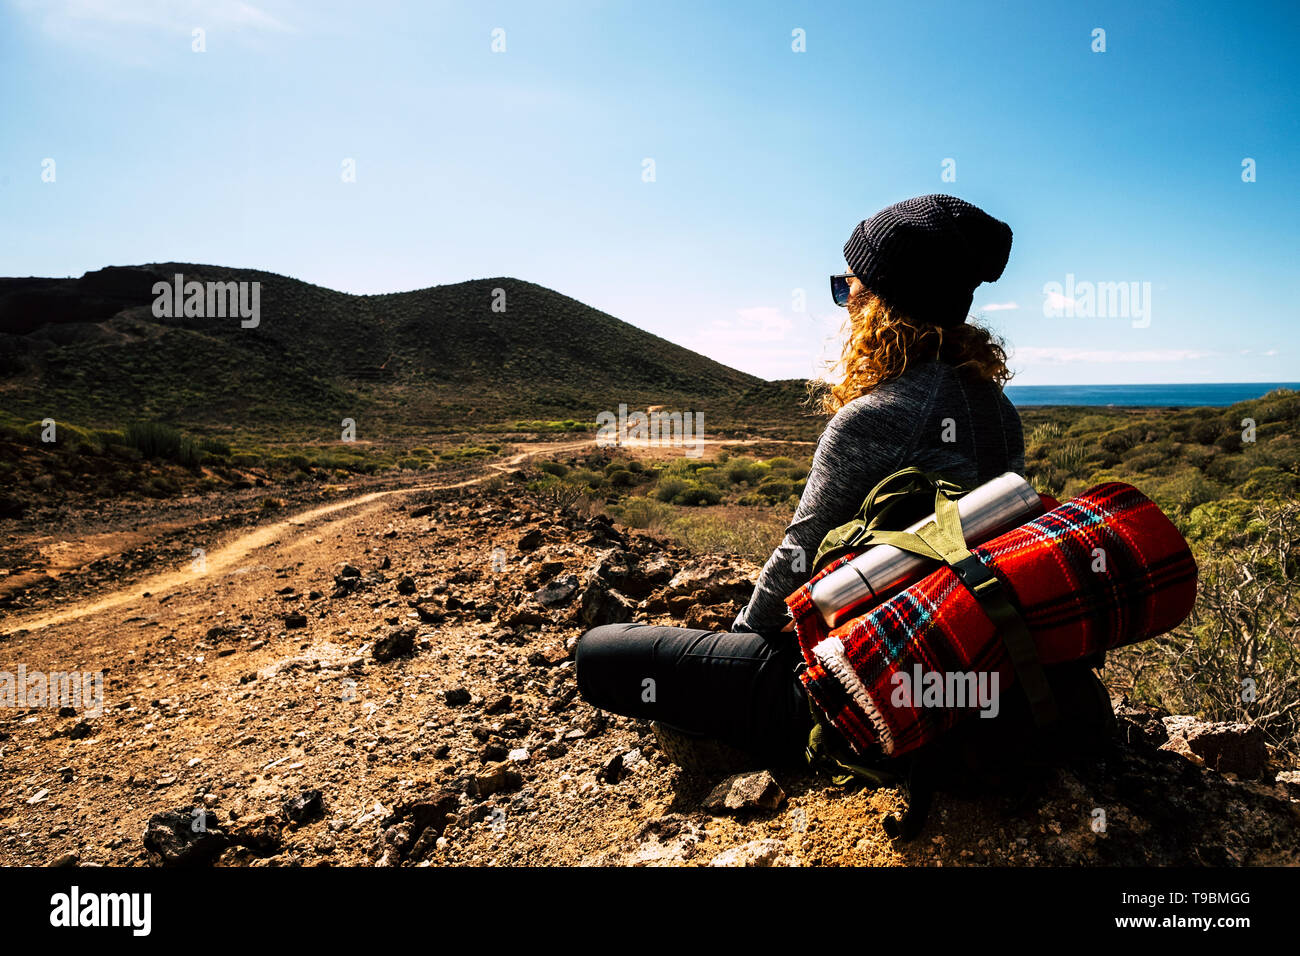 Persone e zaino da trekking avventuroso viaggio attività - donna bionda sedersi e riposare guardando lo splendido paesaggio panoramico con vista del mare e della valle Foto Stock